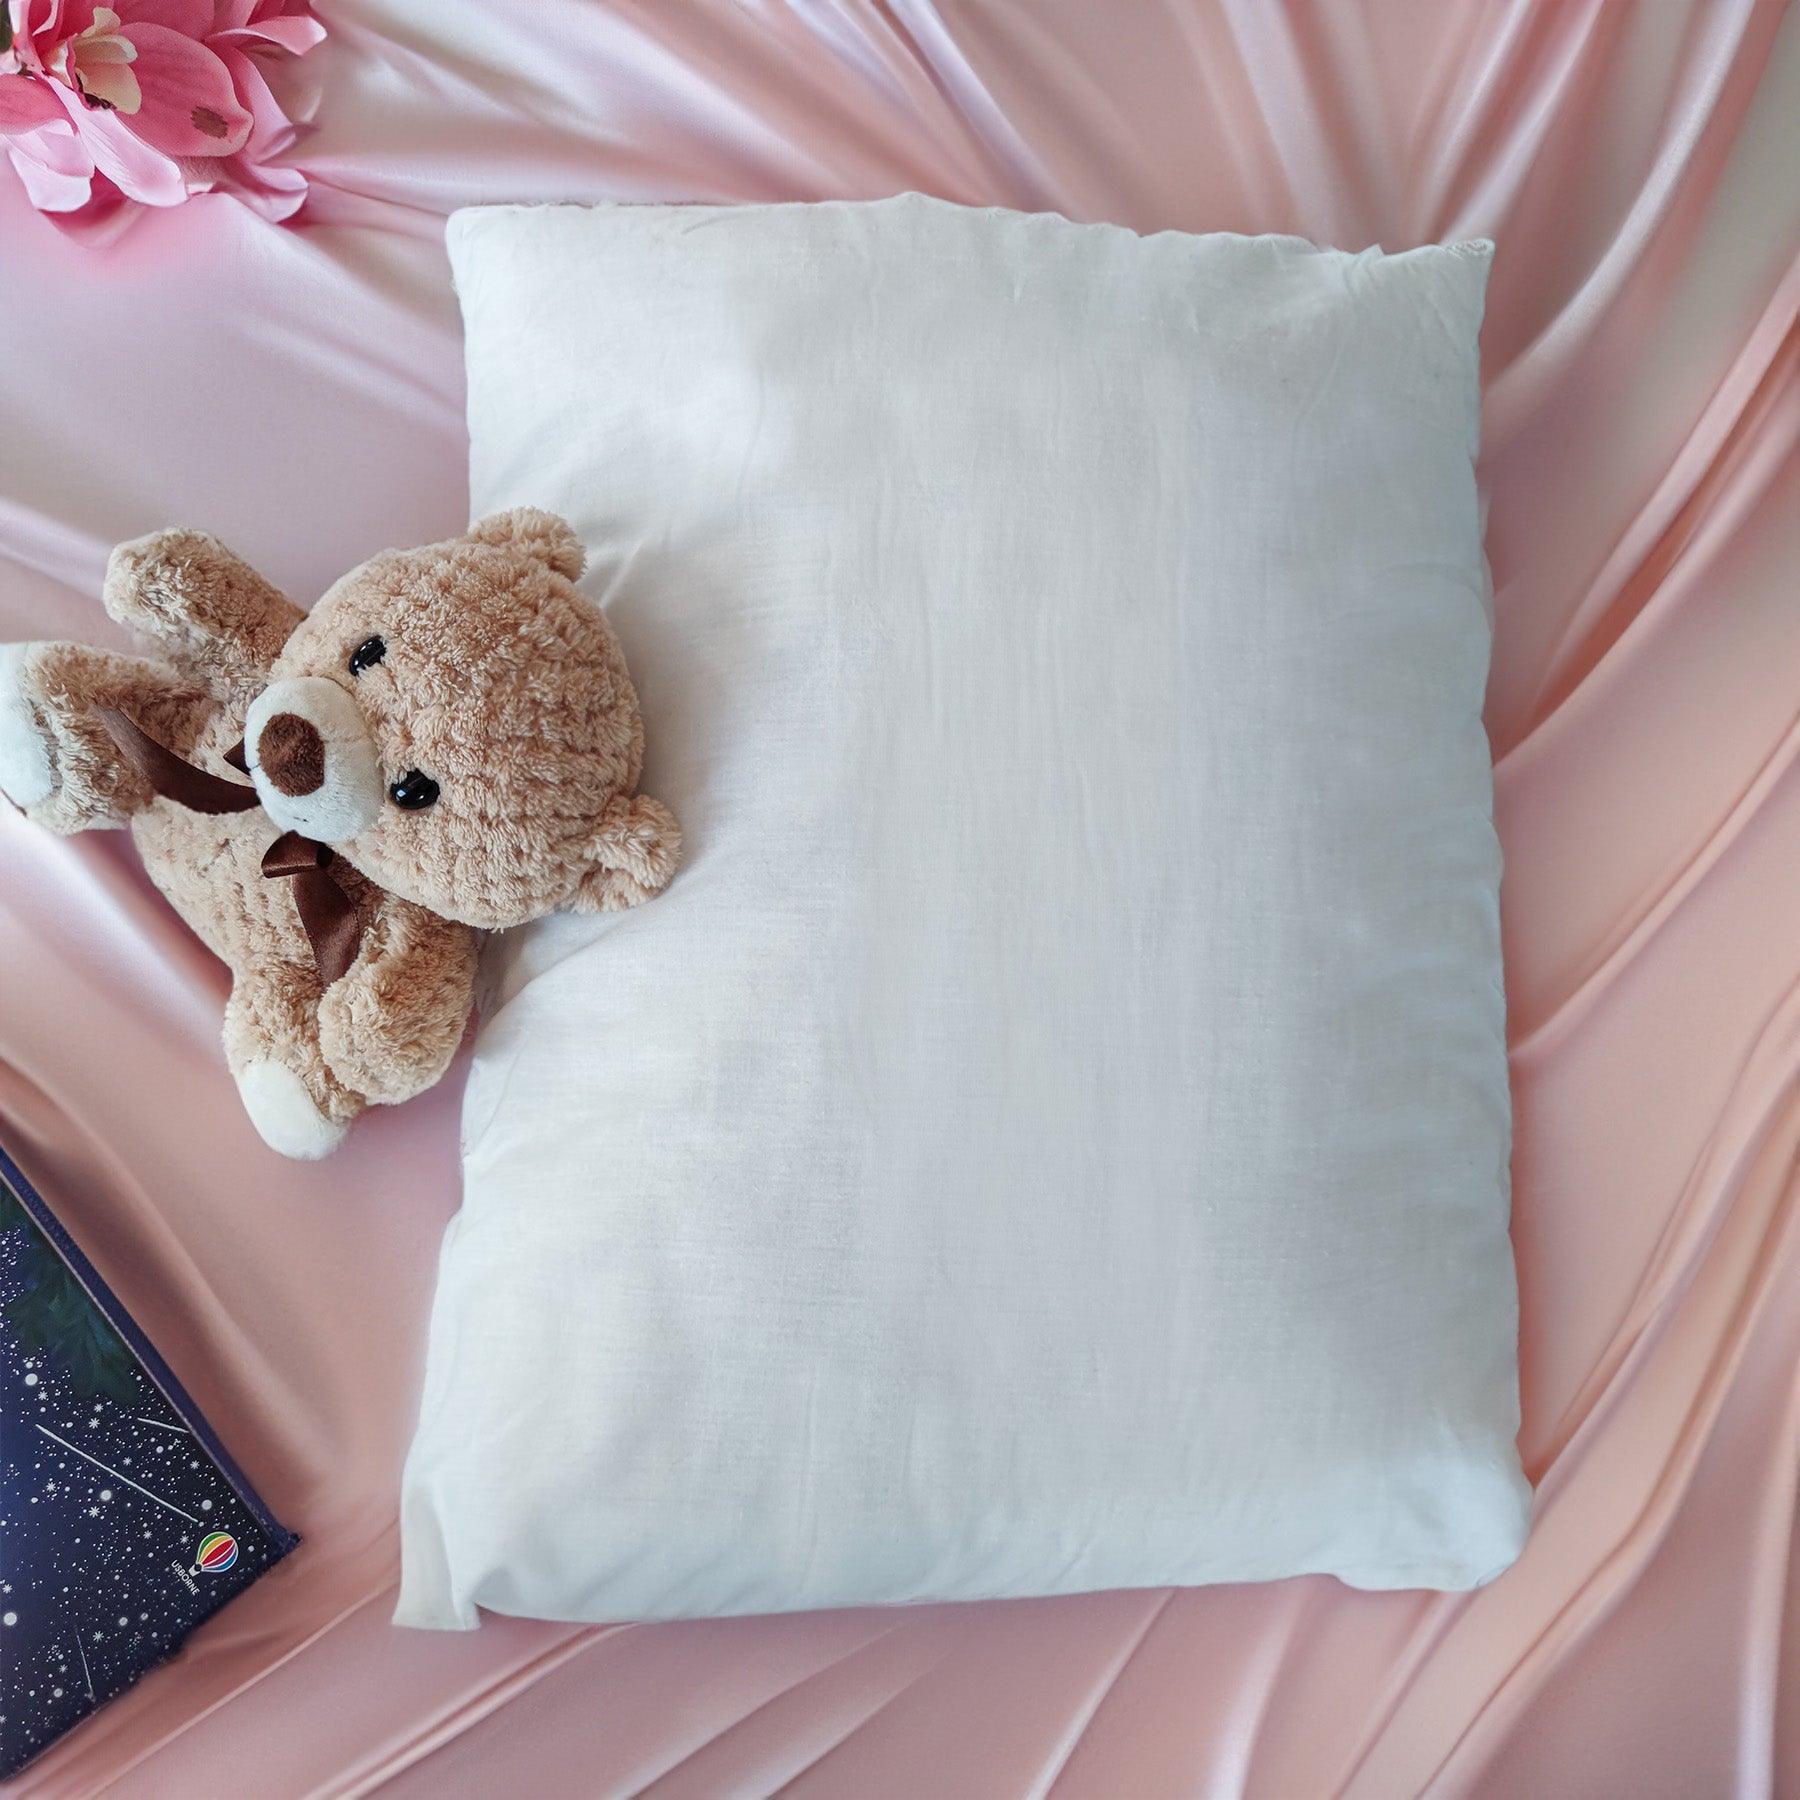 Dettaglio del cuscino antisoffocamento Pisolo di Beliamo, ideale per il sonno sicuro e confortevole dei bambini